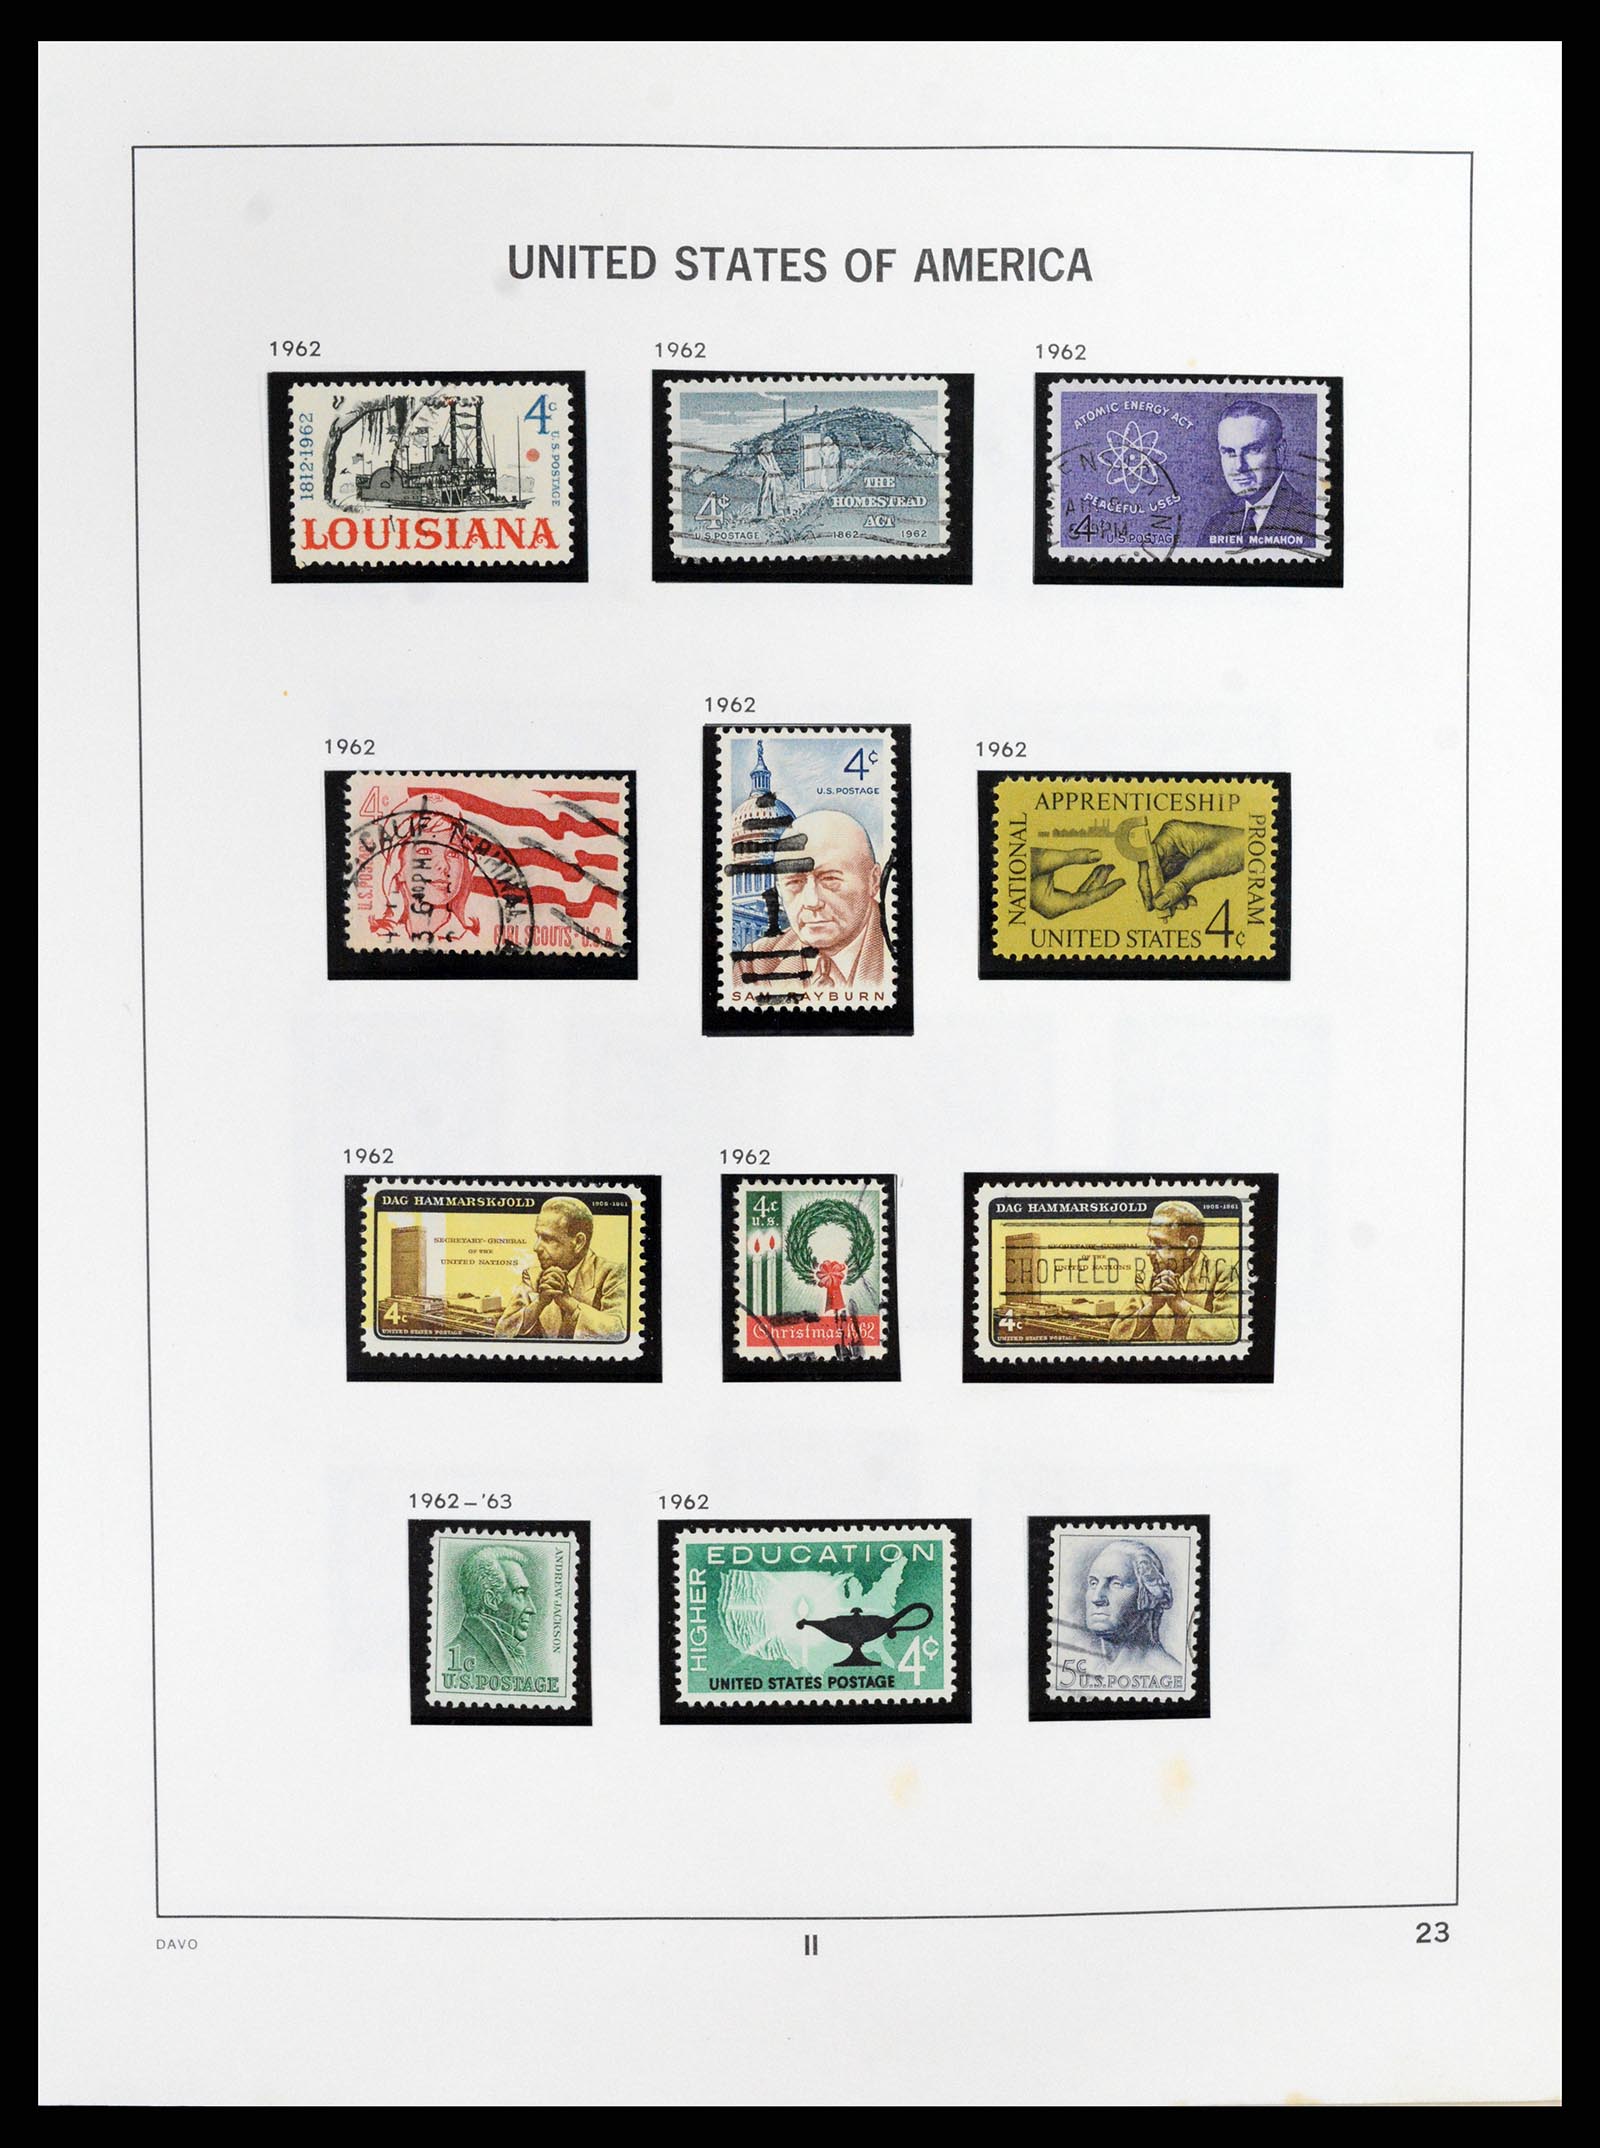 37357 023 - Stamp collection 37357 USA 1945-2009.